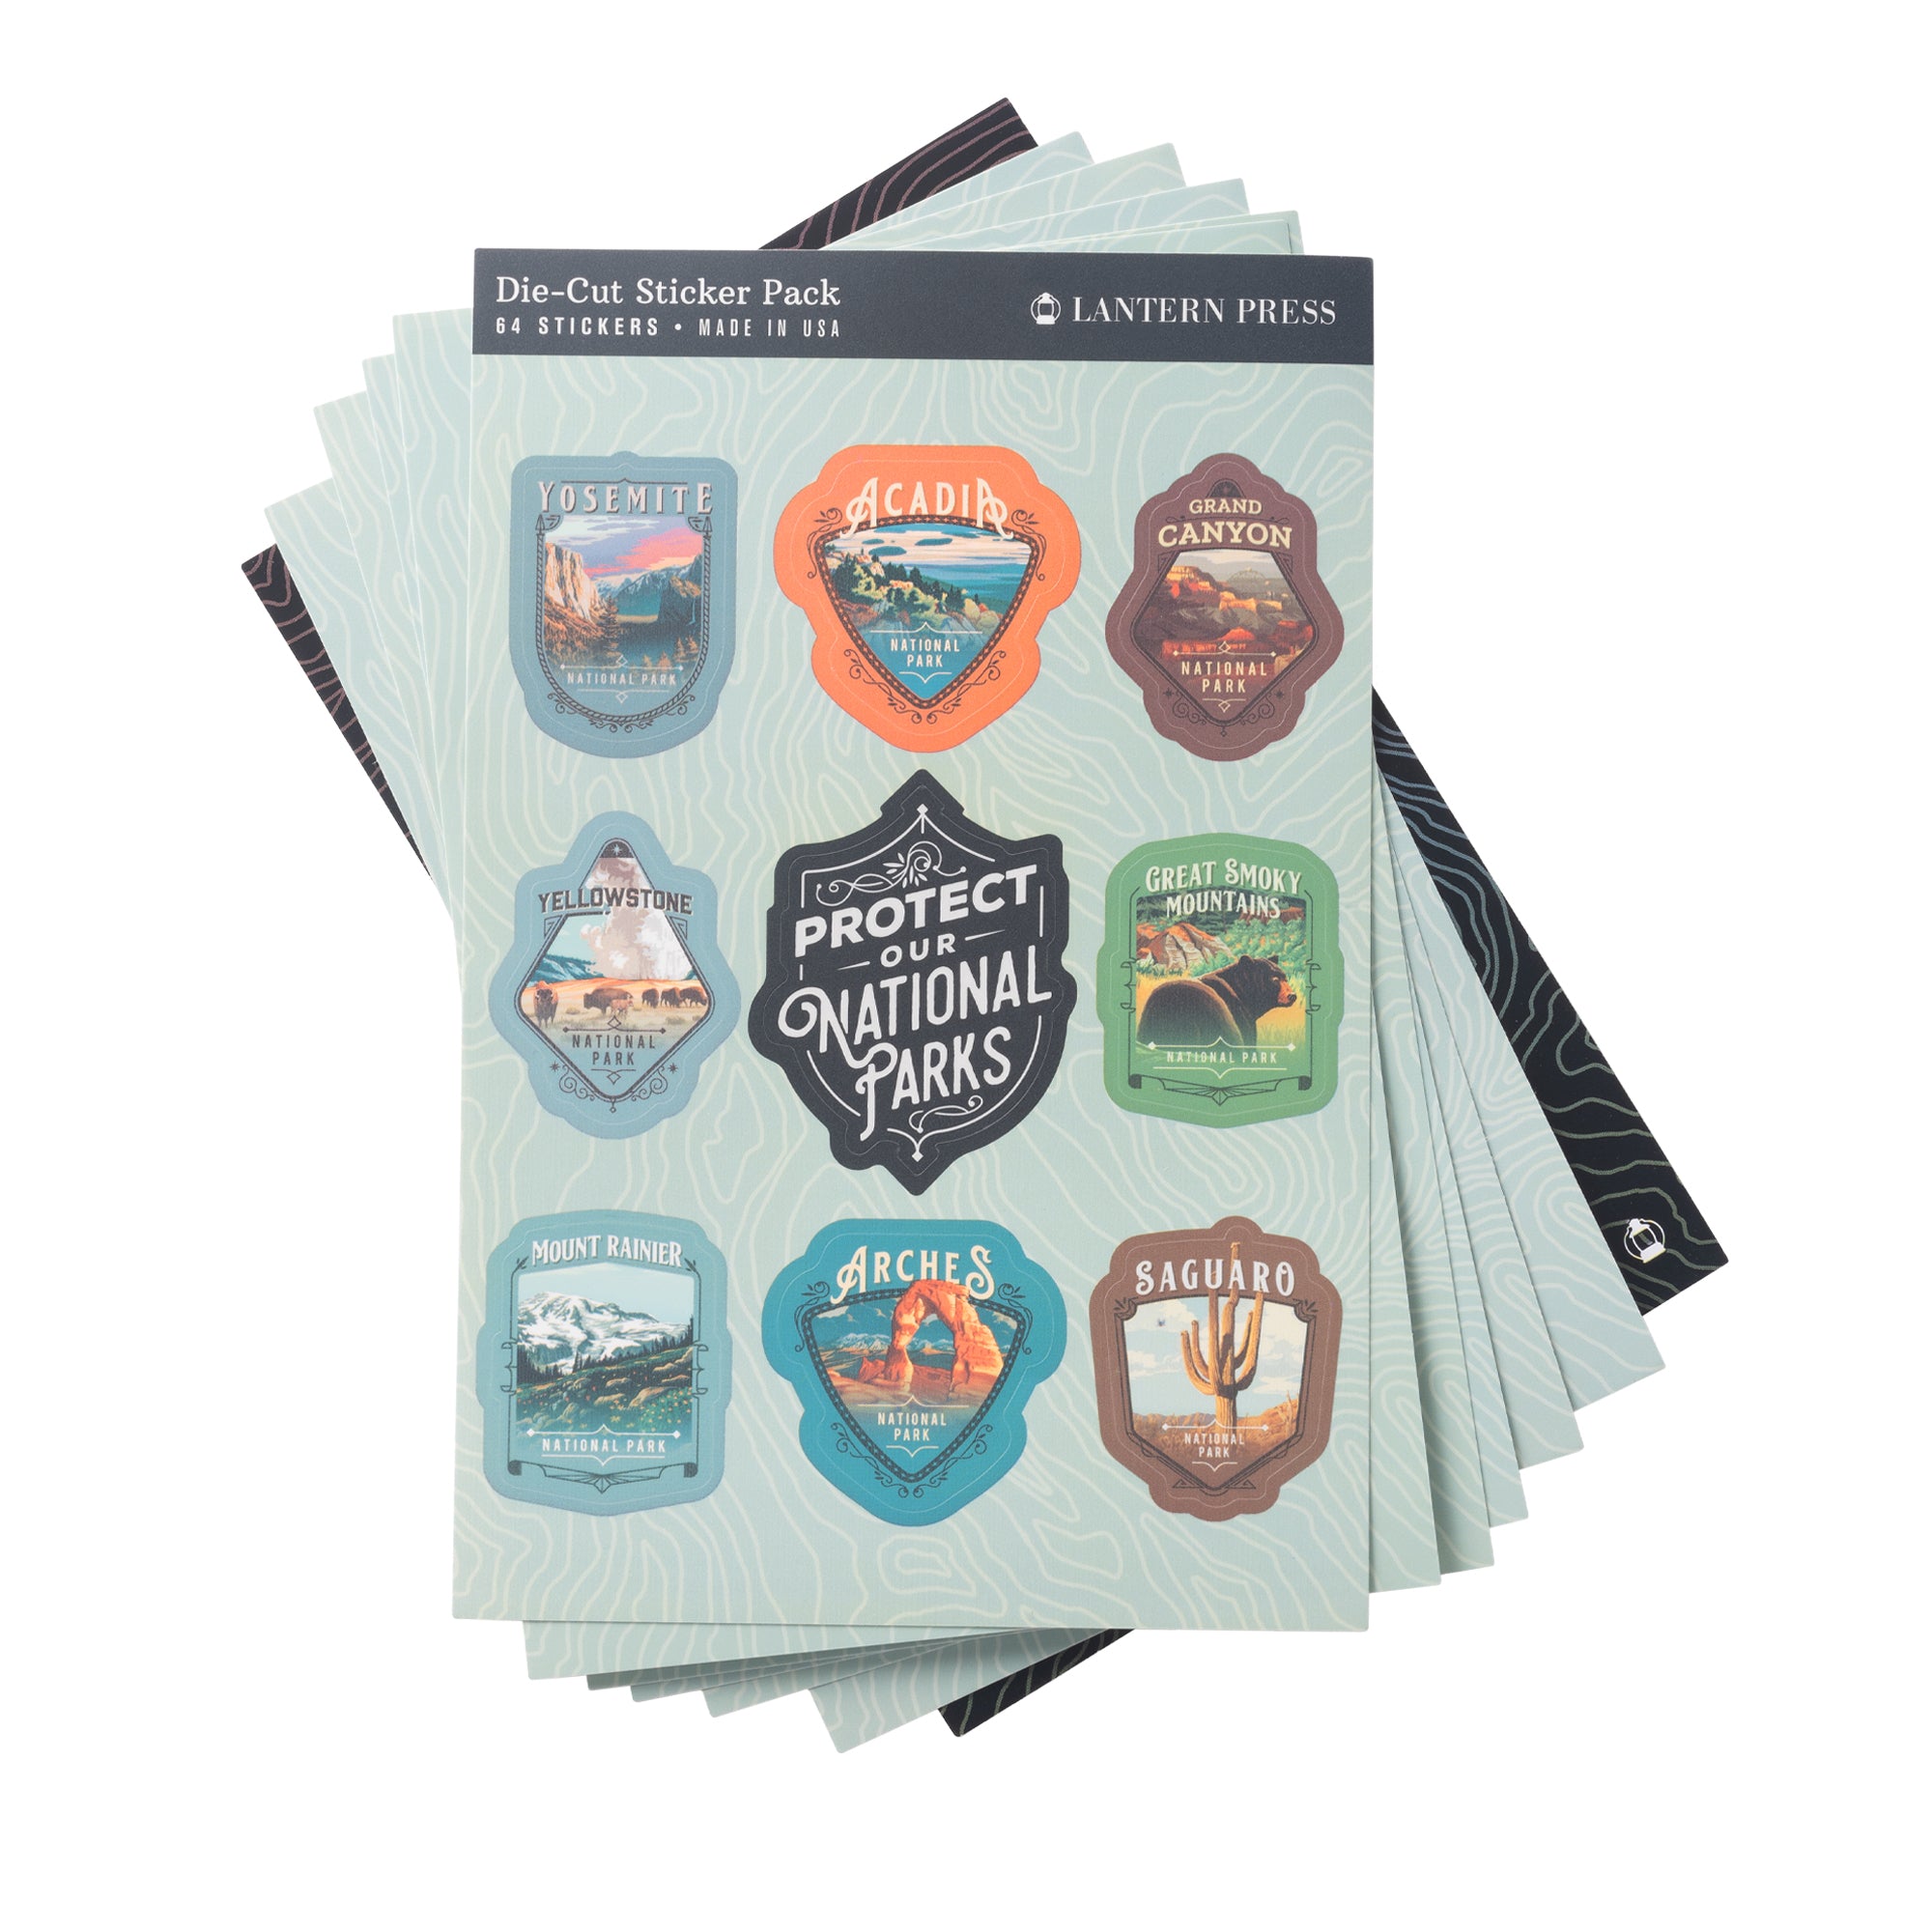 63 National Parks Emblem Sticker set - Shop Americas National Parks